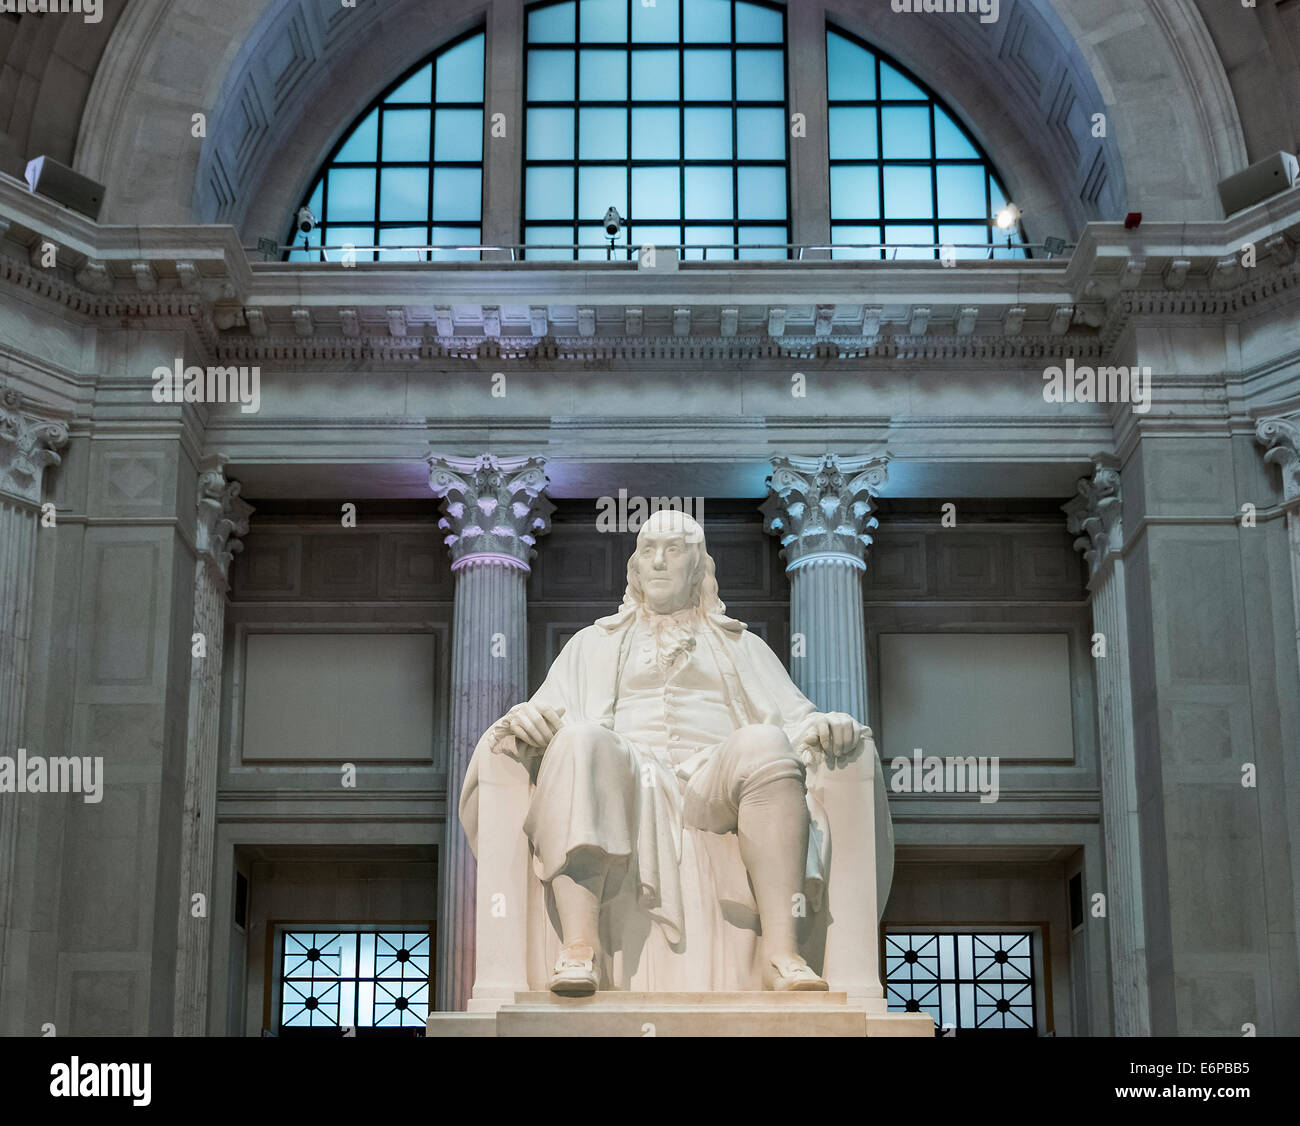 Benjamin Franklin statue at the Franlin Institute, Philadelphia, Pennsylvania, USA. Stock Photo